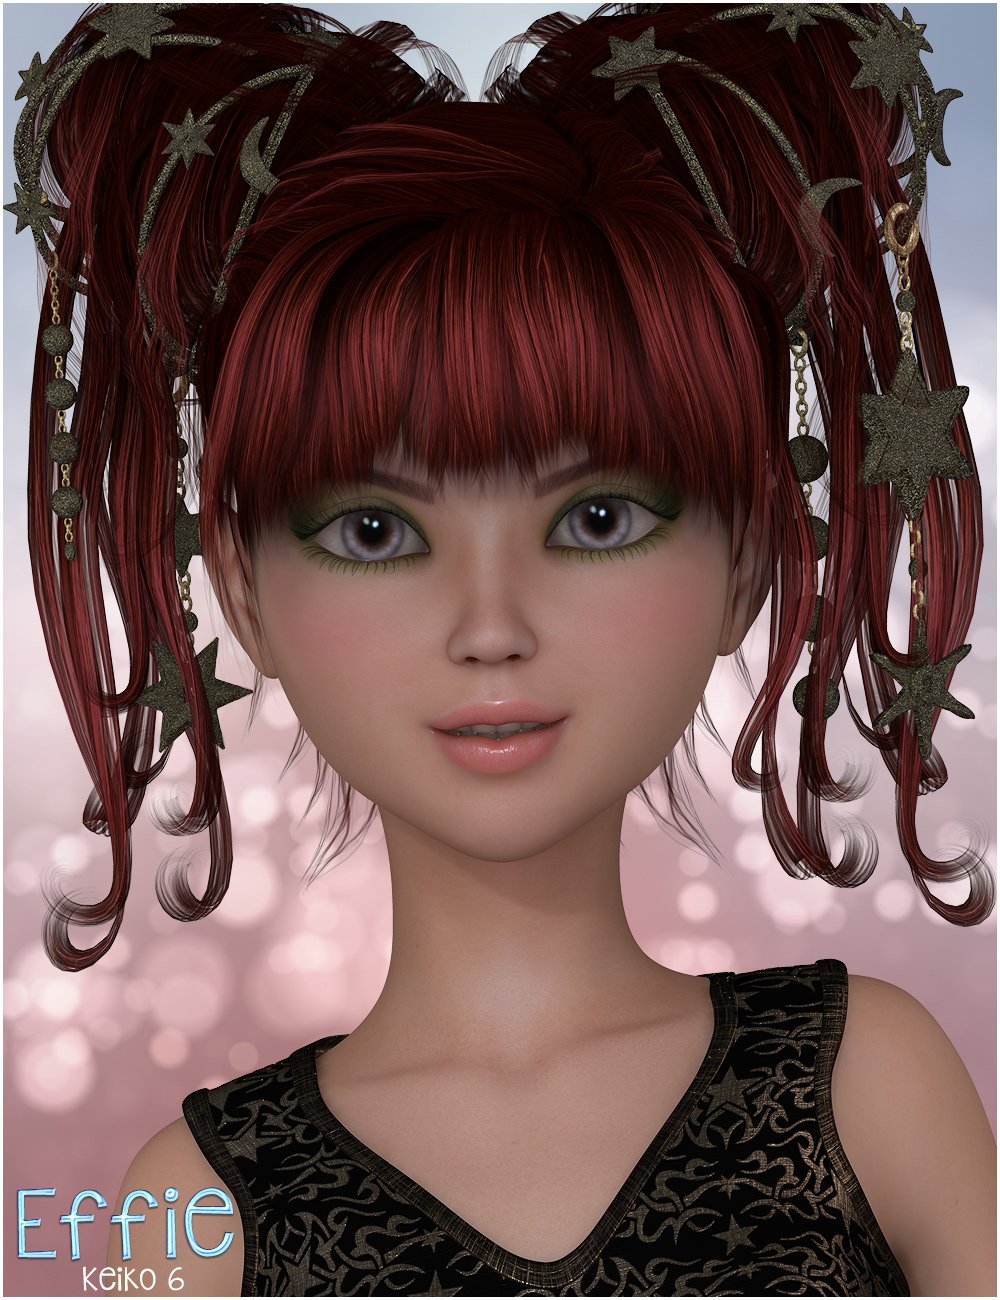 FWSA Effie for Keiko 6 by: Fred Winkler ArtSabby, 3D Models by Daz 3D